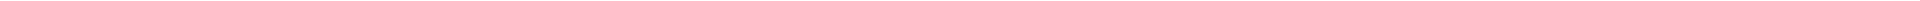 Лечение десен - цены в Астане (Нур-Султан), Алматы, Атырау, Усть-Каменогорск, Уральск, Кокшетау в Казахстане, фото 15